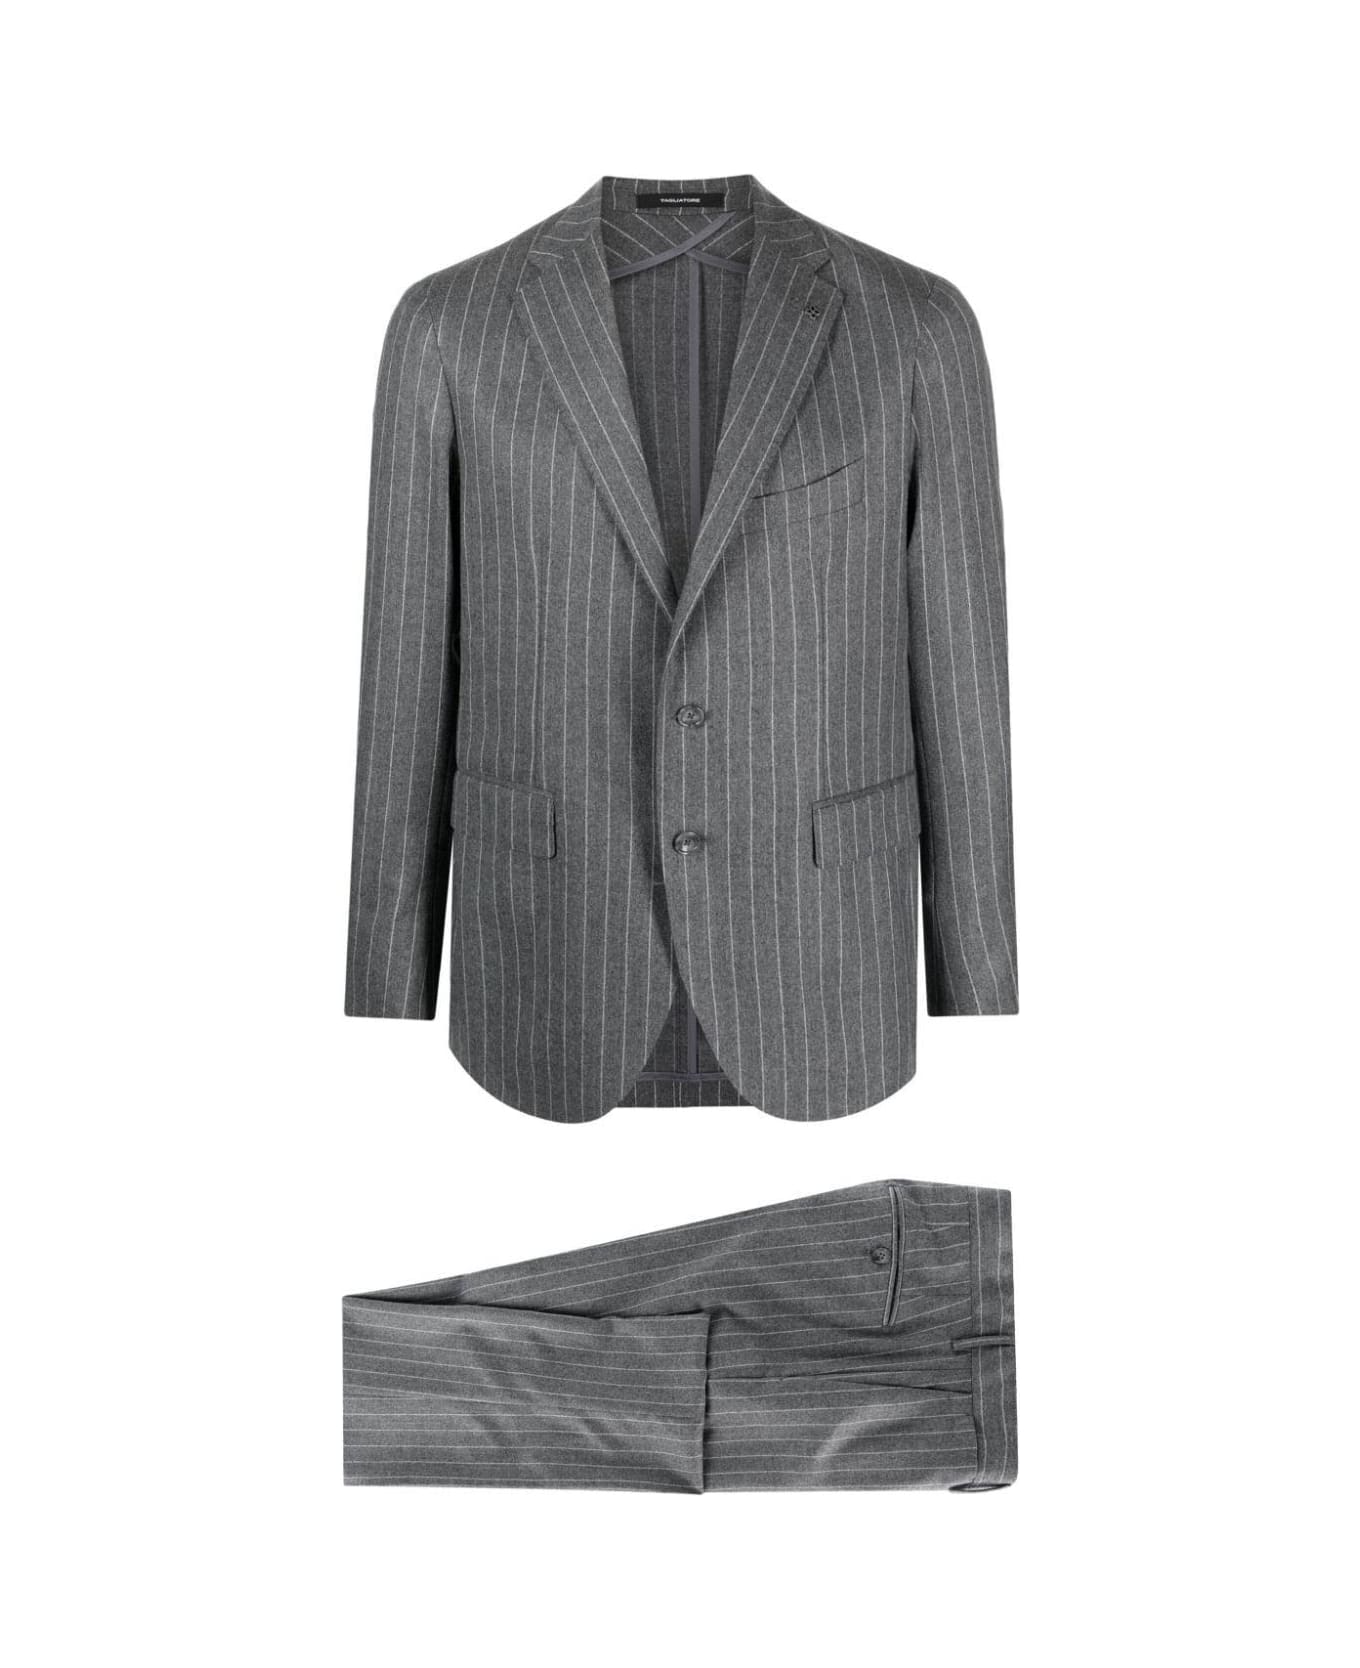 Tagliatore Suit - Medium Grey